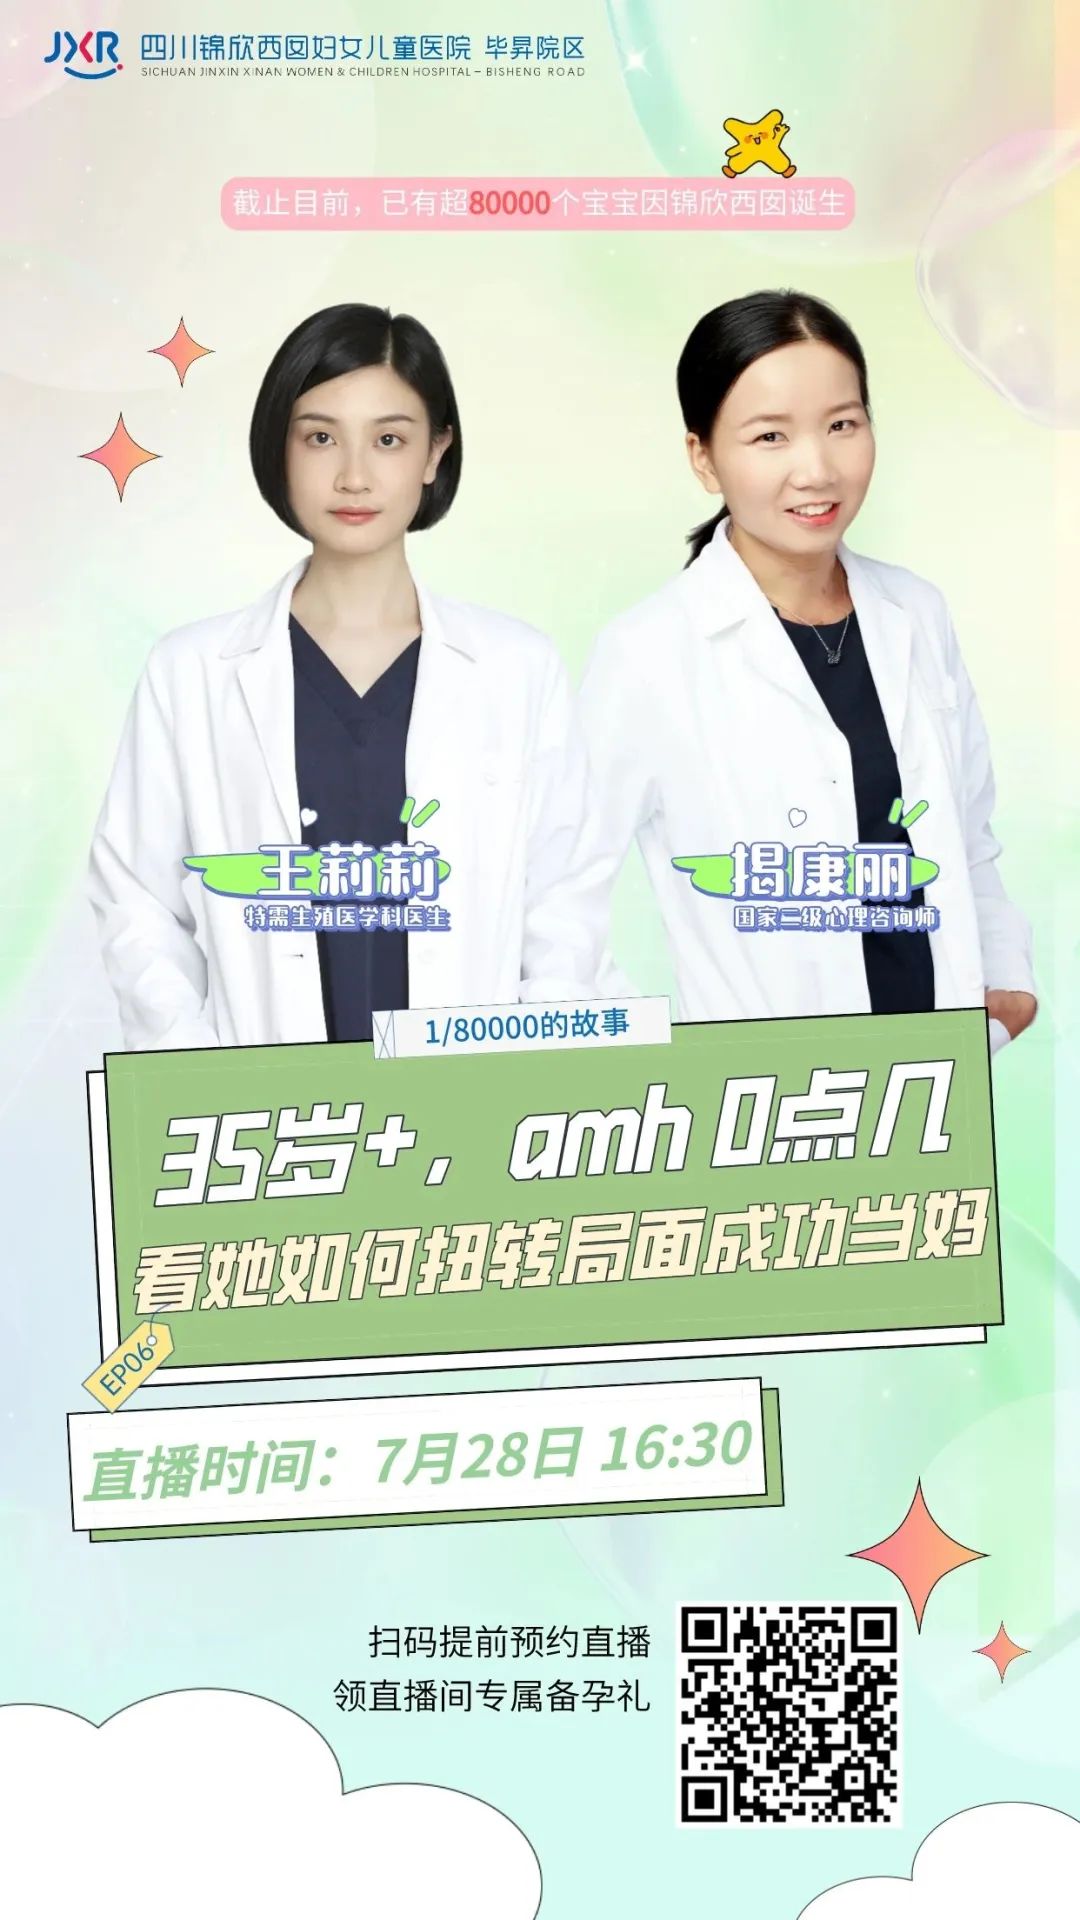 7月28日 16:30 王莉莉、揭康丽医生直播